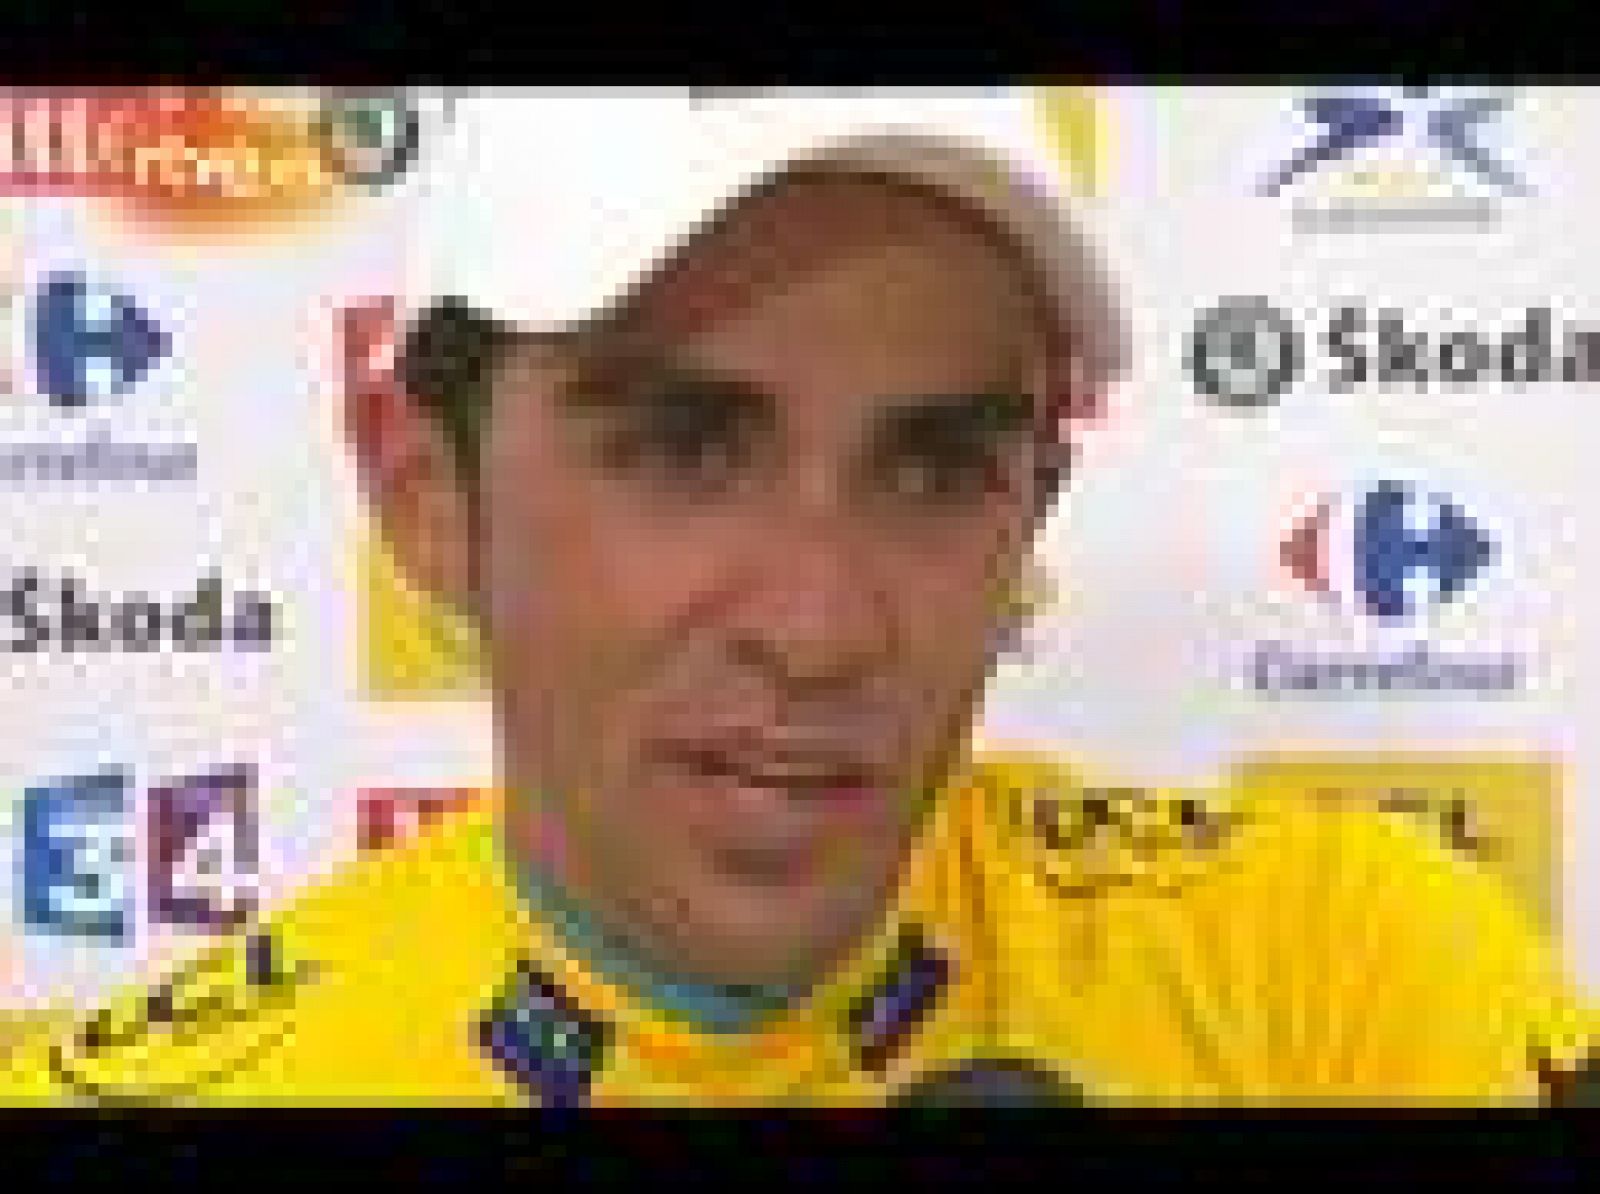 El virtual ganador del Tour 2010 se ha mostrado muy emocionado a su llegada a la meta en Pauillac y ha roto en lágrimas, al recordar el "gran trabajo" que ha hecho "para llegar hasta aquí". Respecto a la etapa, ha indicado que había llegado "a dar po